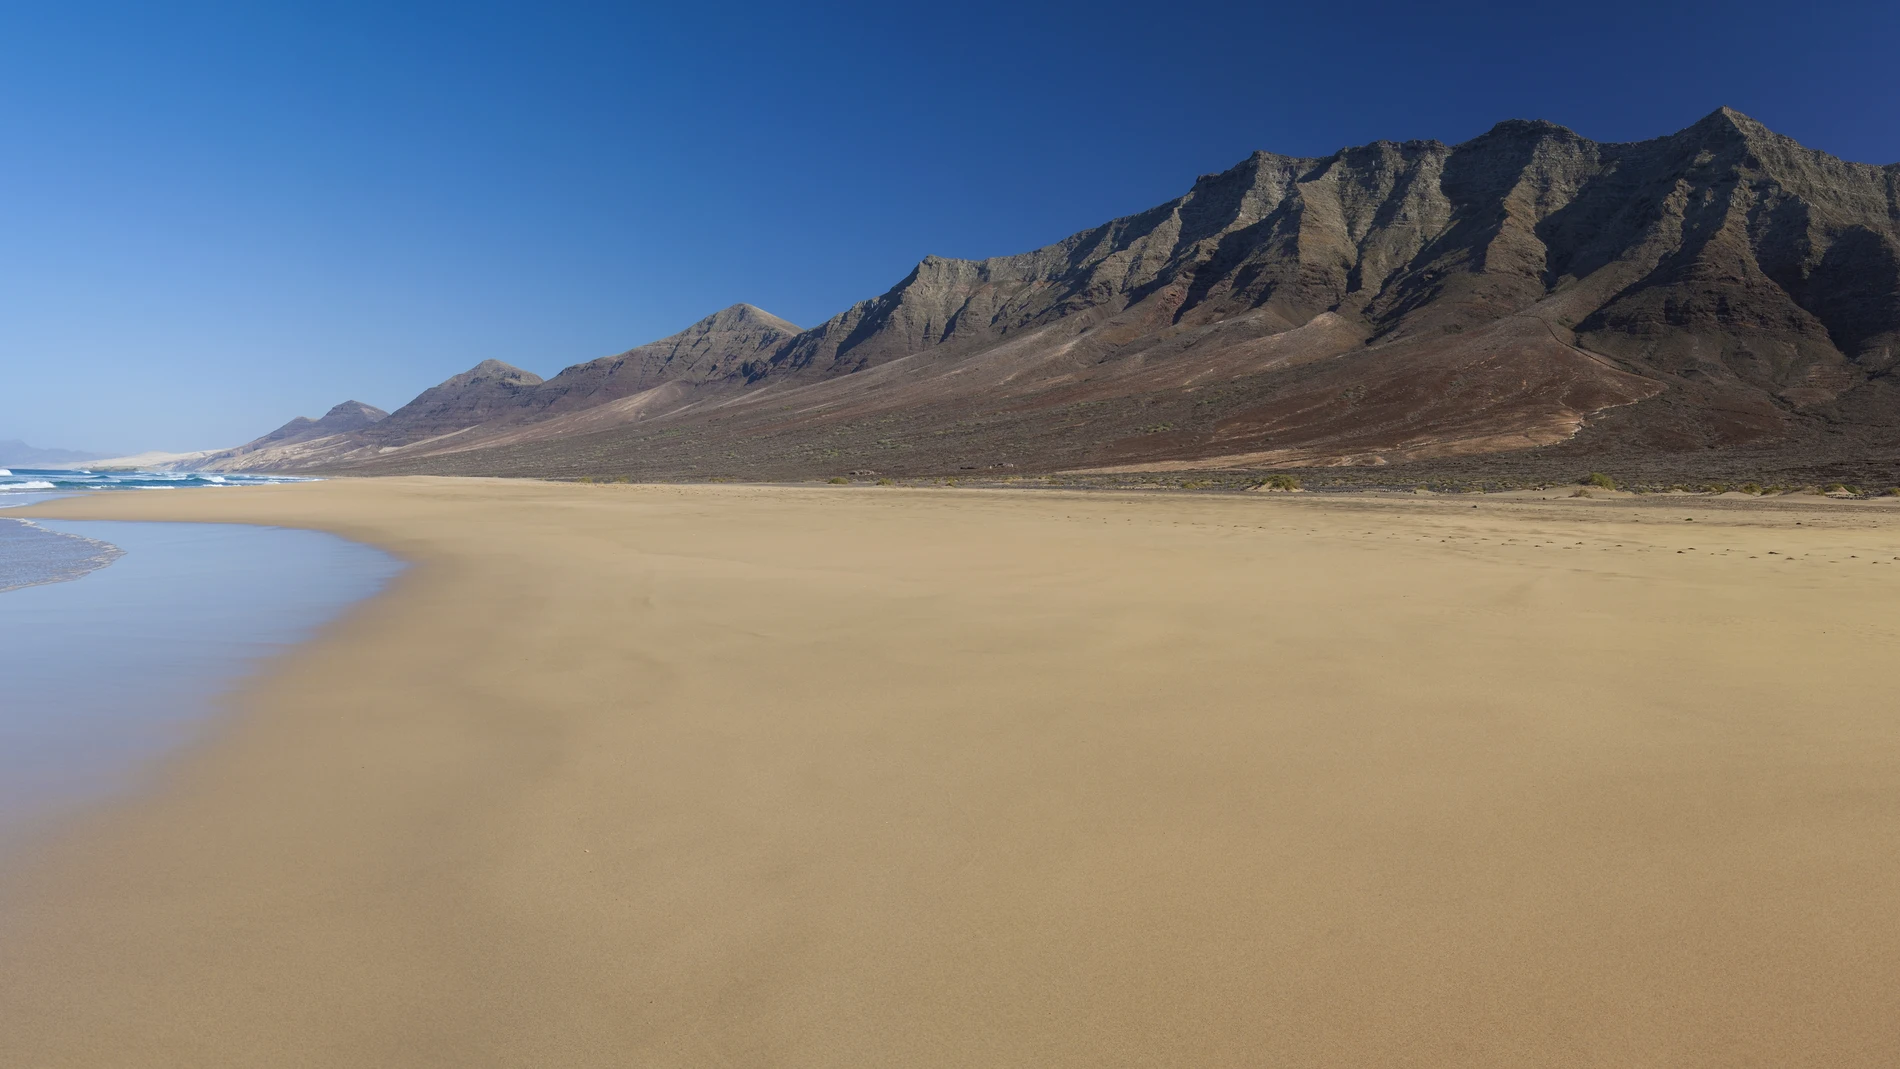 La playa de Cofete, en Fuerteventura, es una de las más largas y espectaculares de España